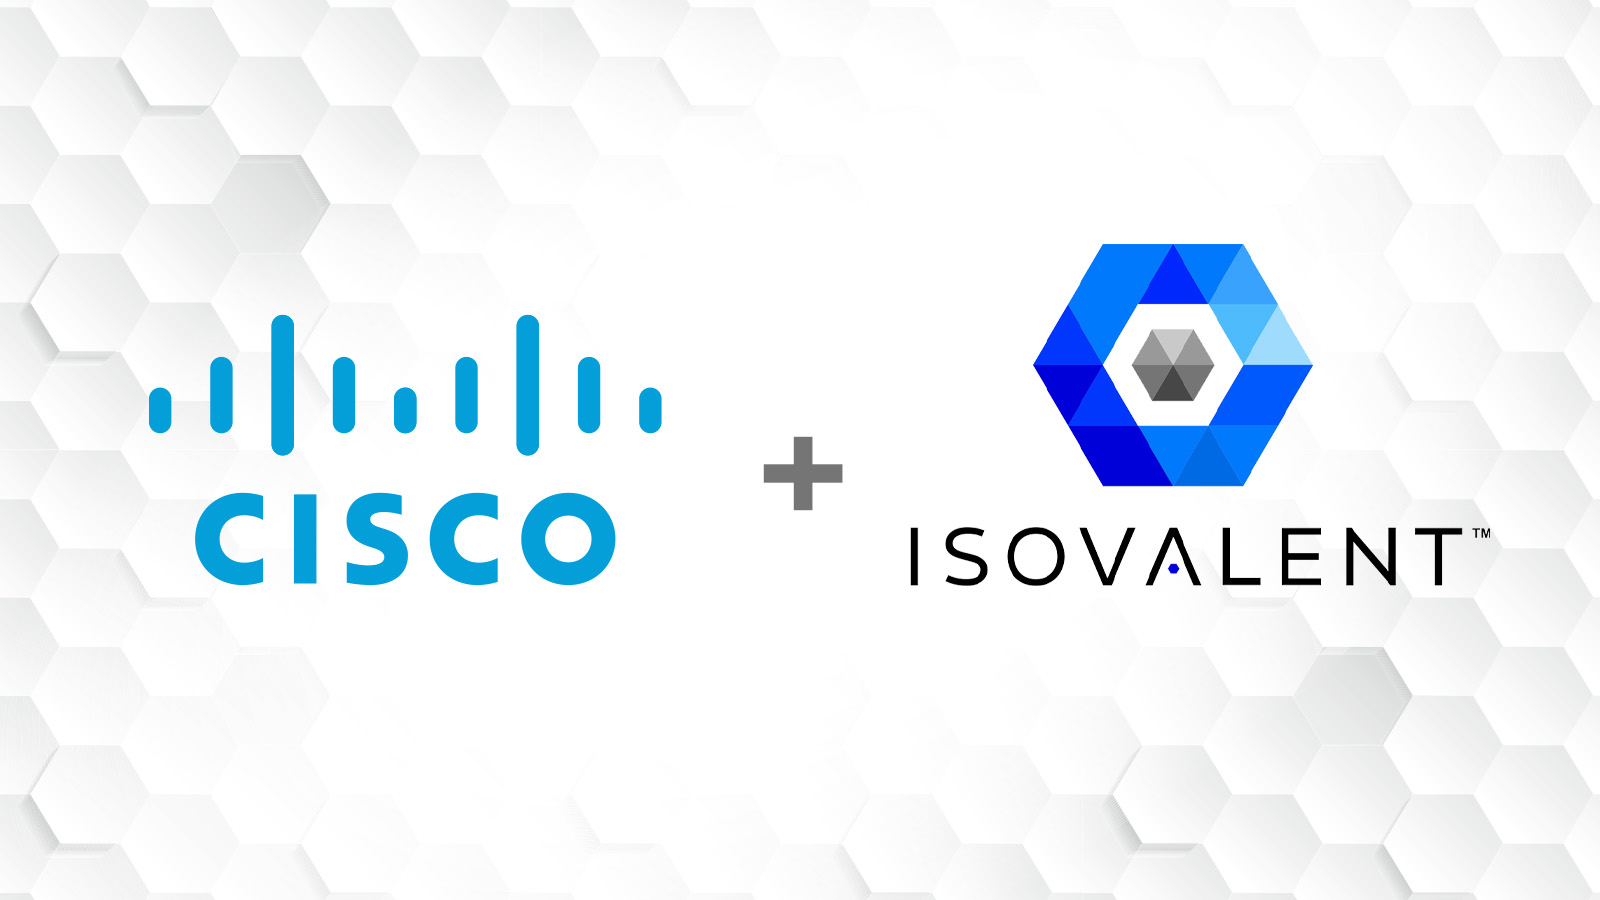 Cisco’s Isovalent Acquisition